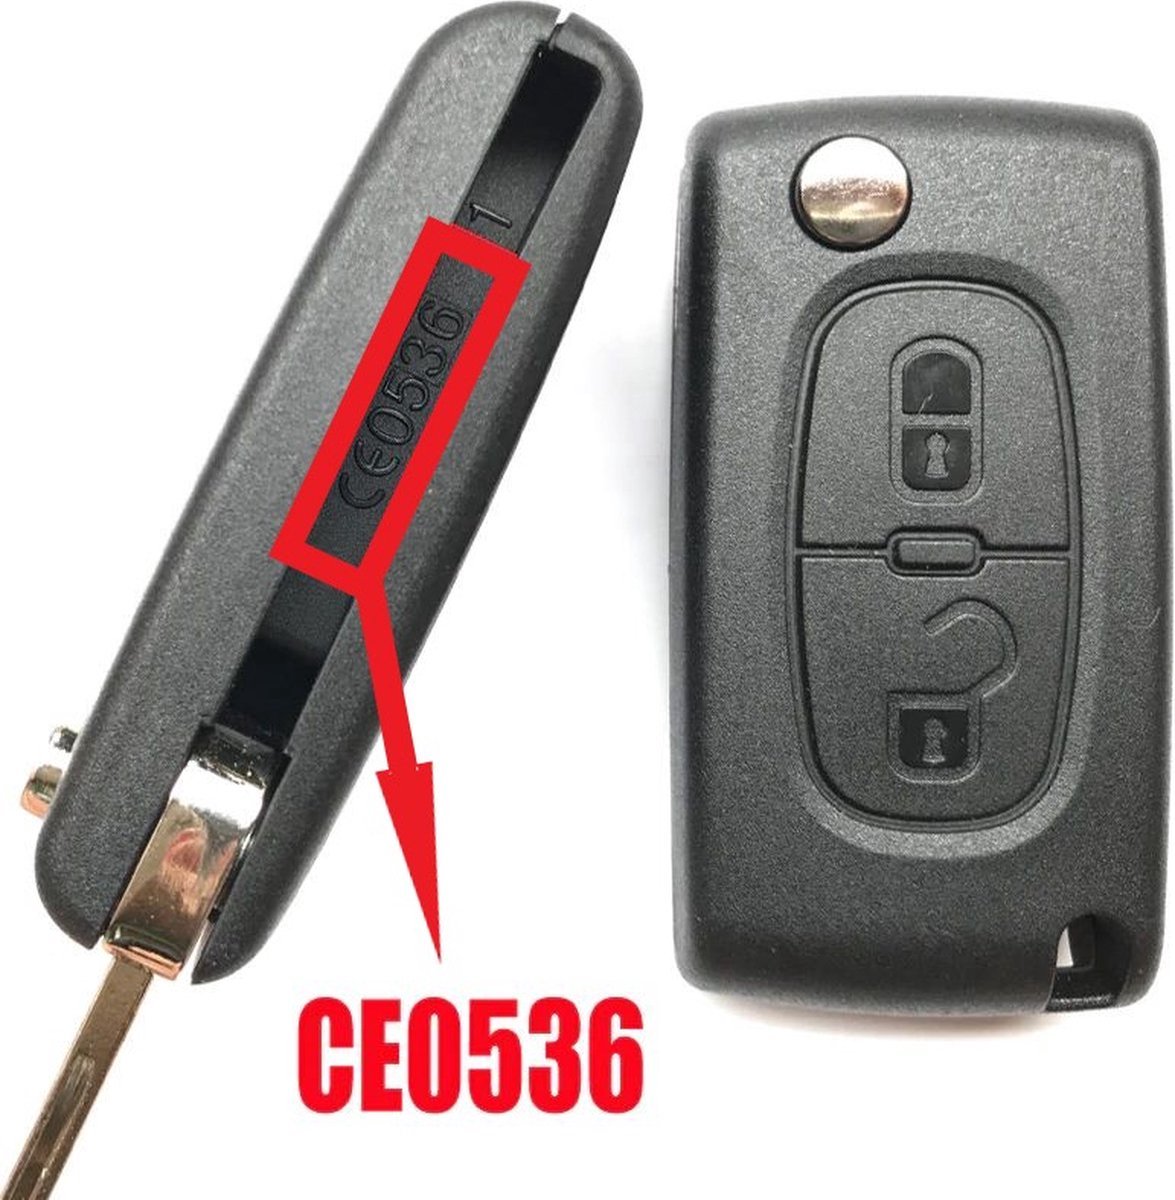 Peugeot - klapsleutel behuizing - 2 knoppen - HU83 met zijgroef - CE0536... |